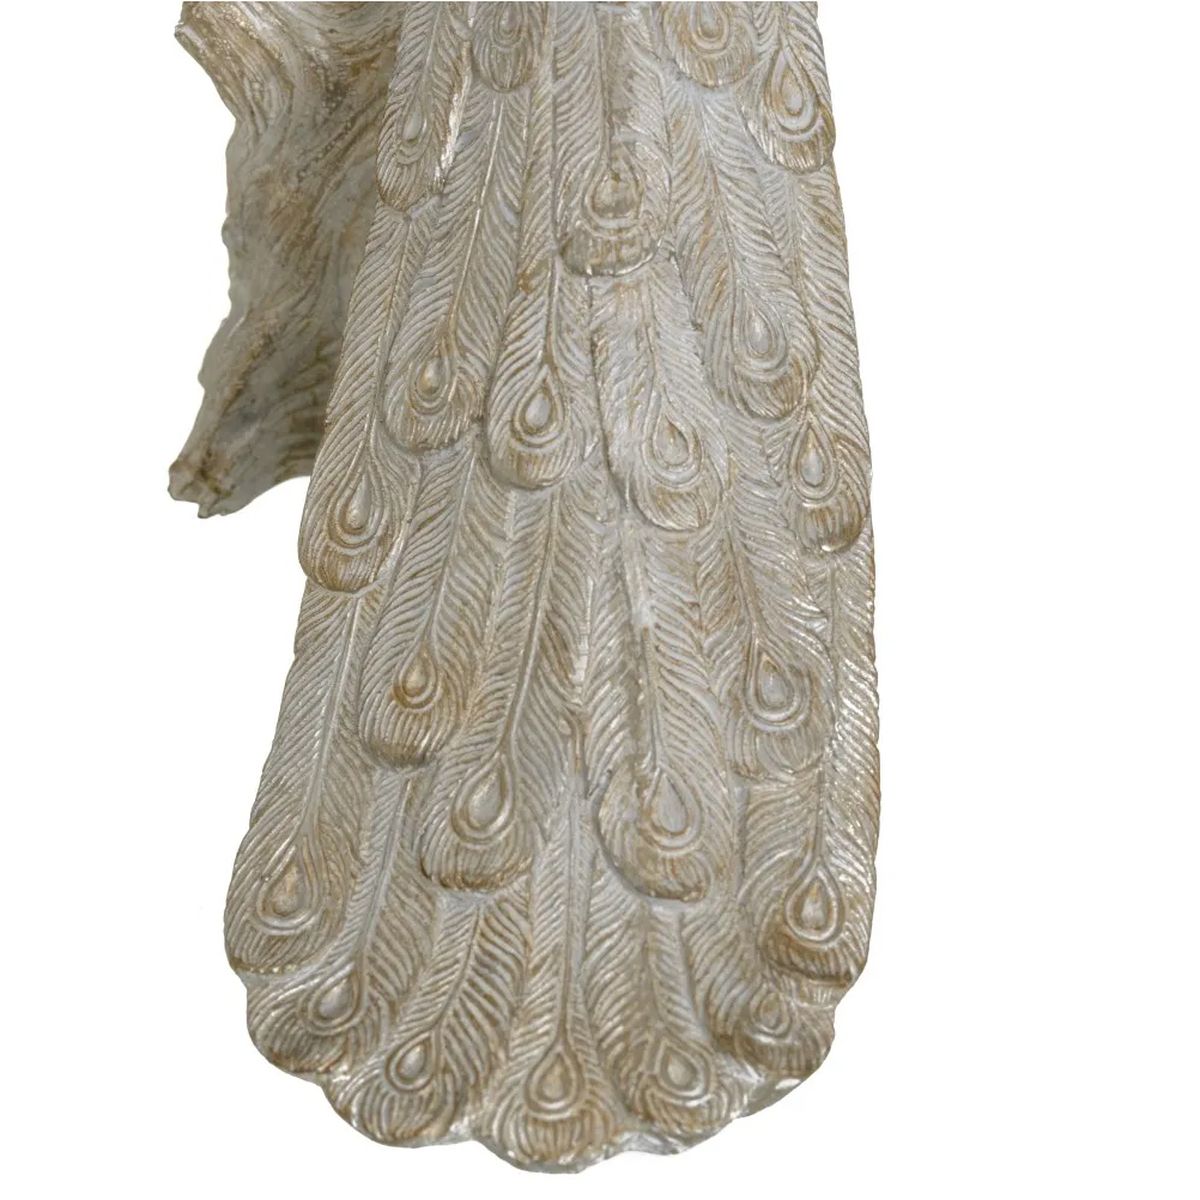 Statuette de dcoration Paon blanc patin or et argent